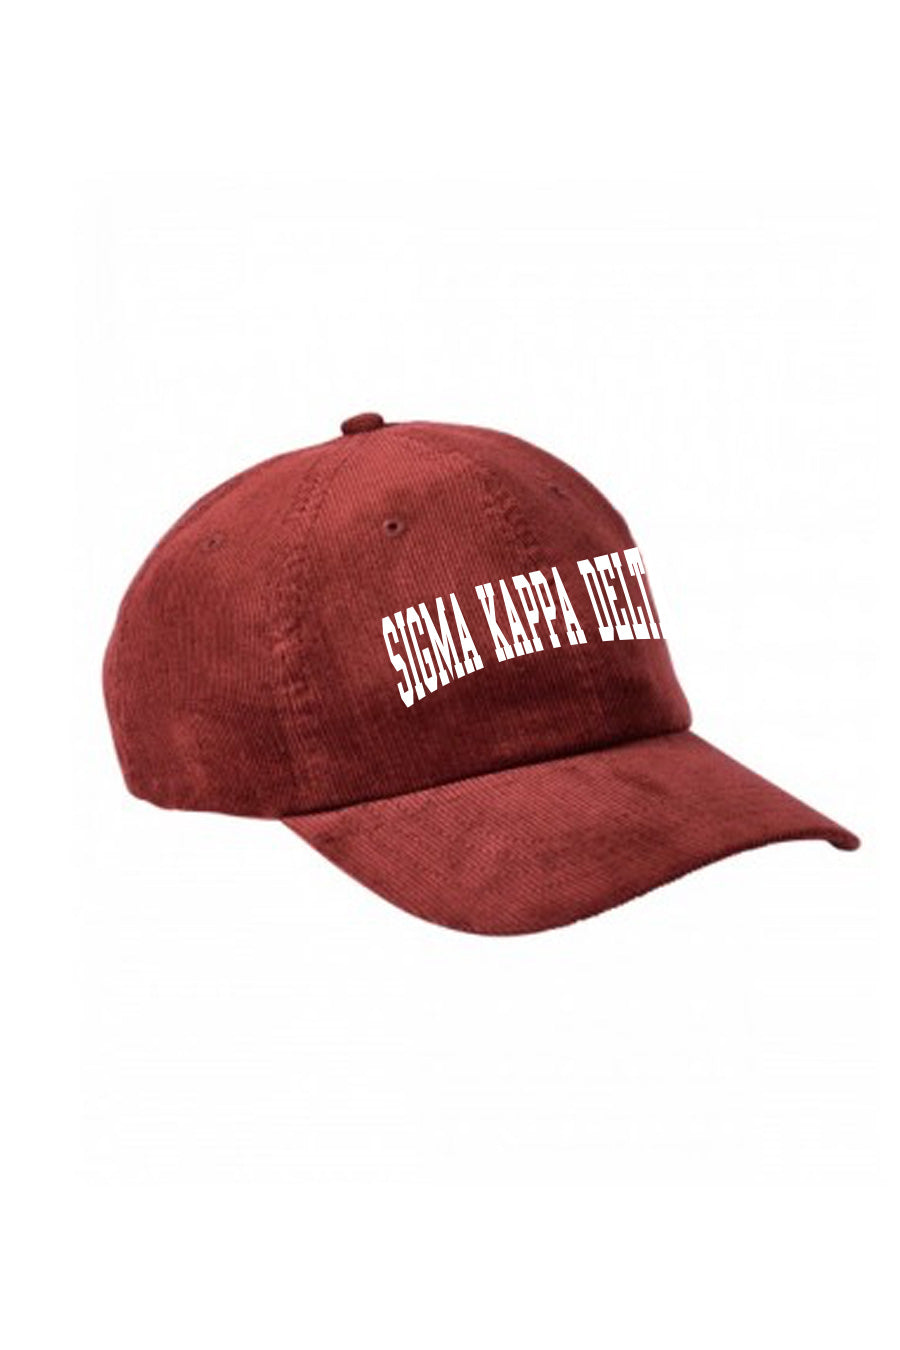 Sigma Kappa Delta Hat